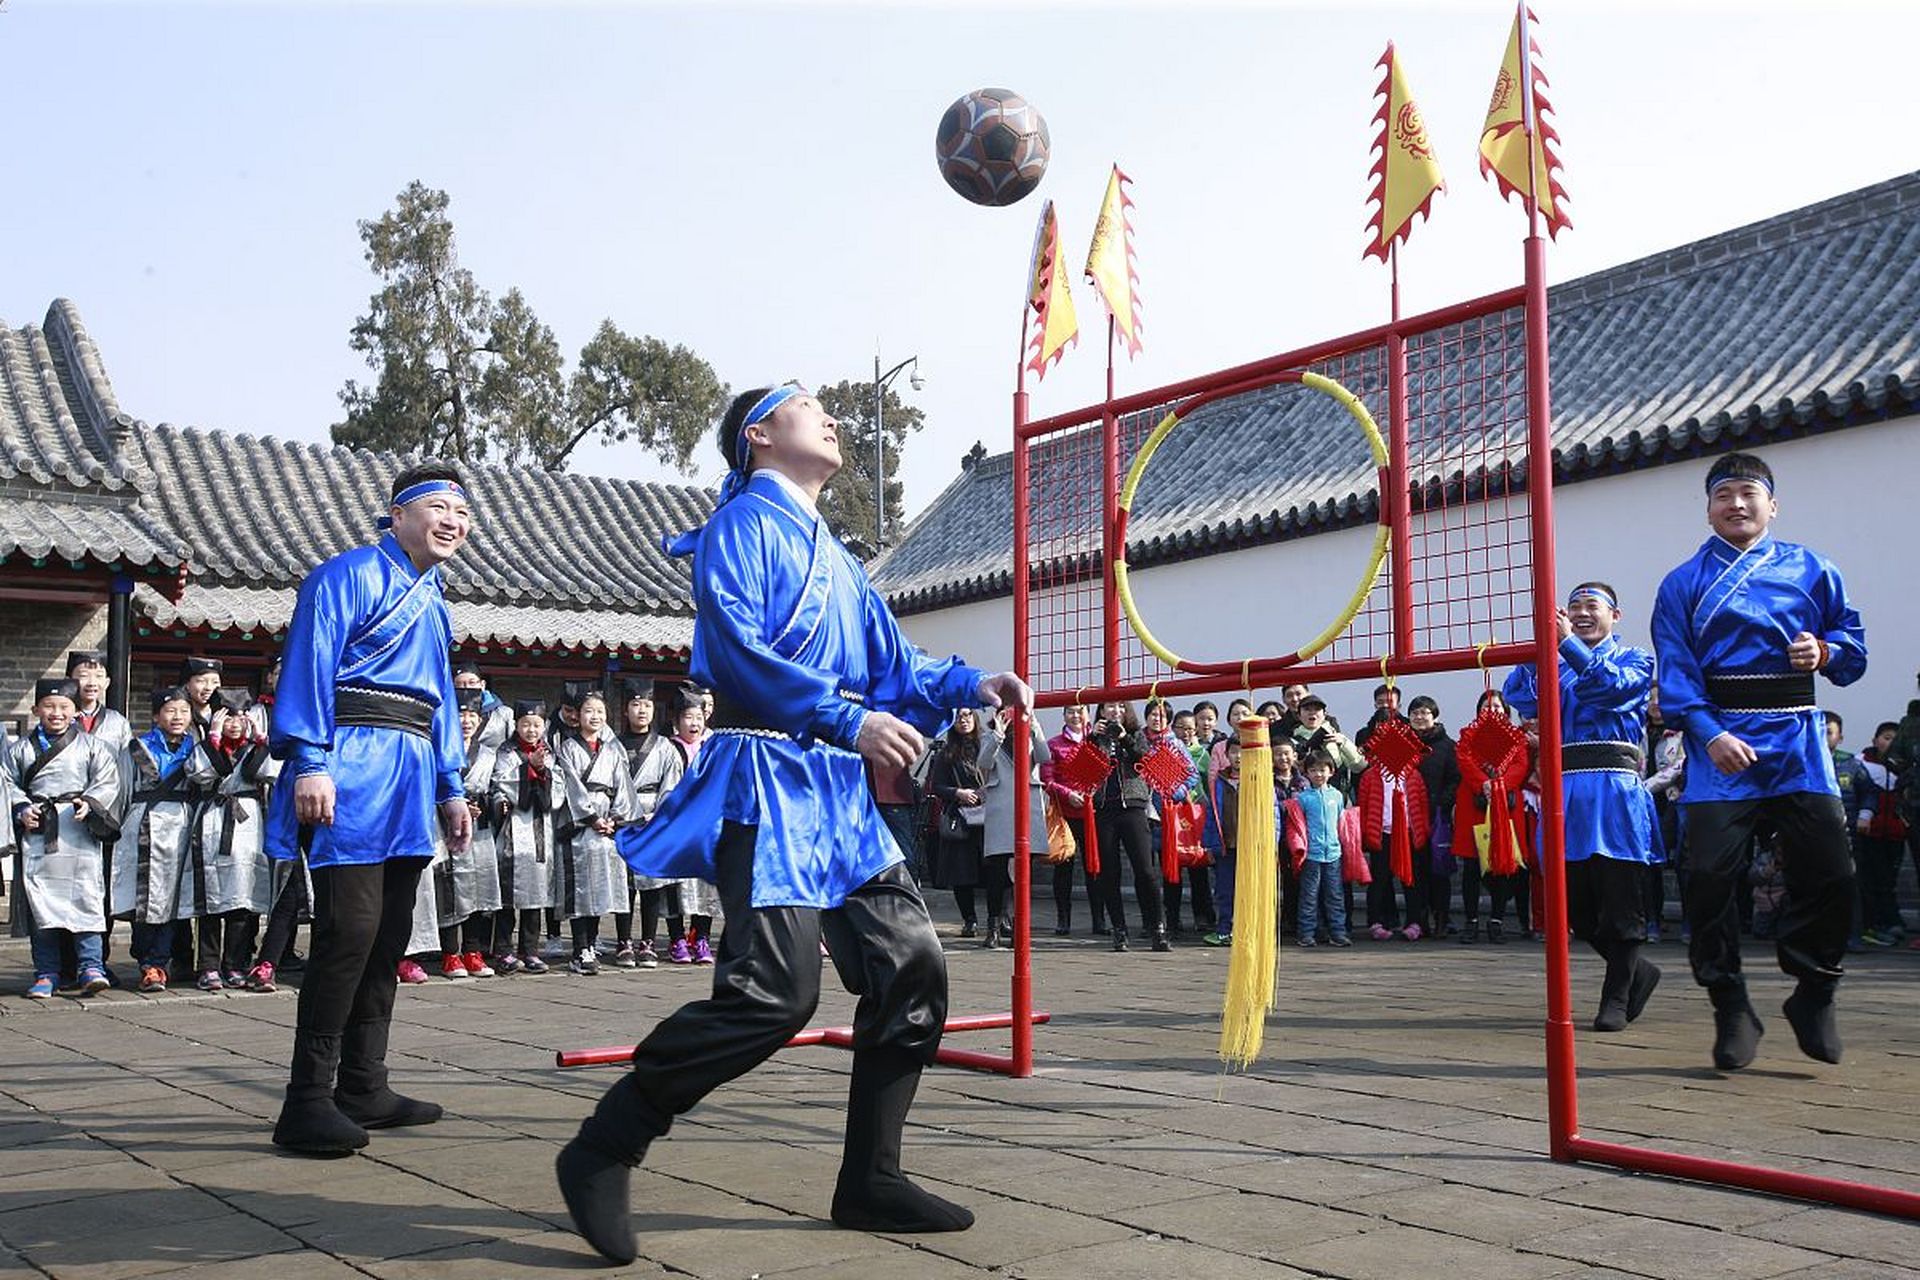 蹴鞠是清明节,端午节和重阳节等节日的古老风俗,比赛通常在空旷场地